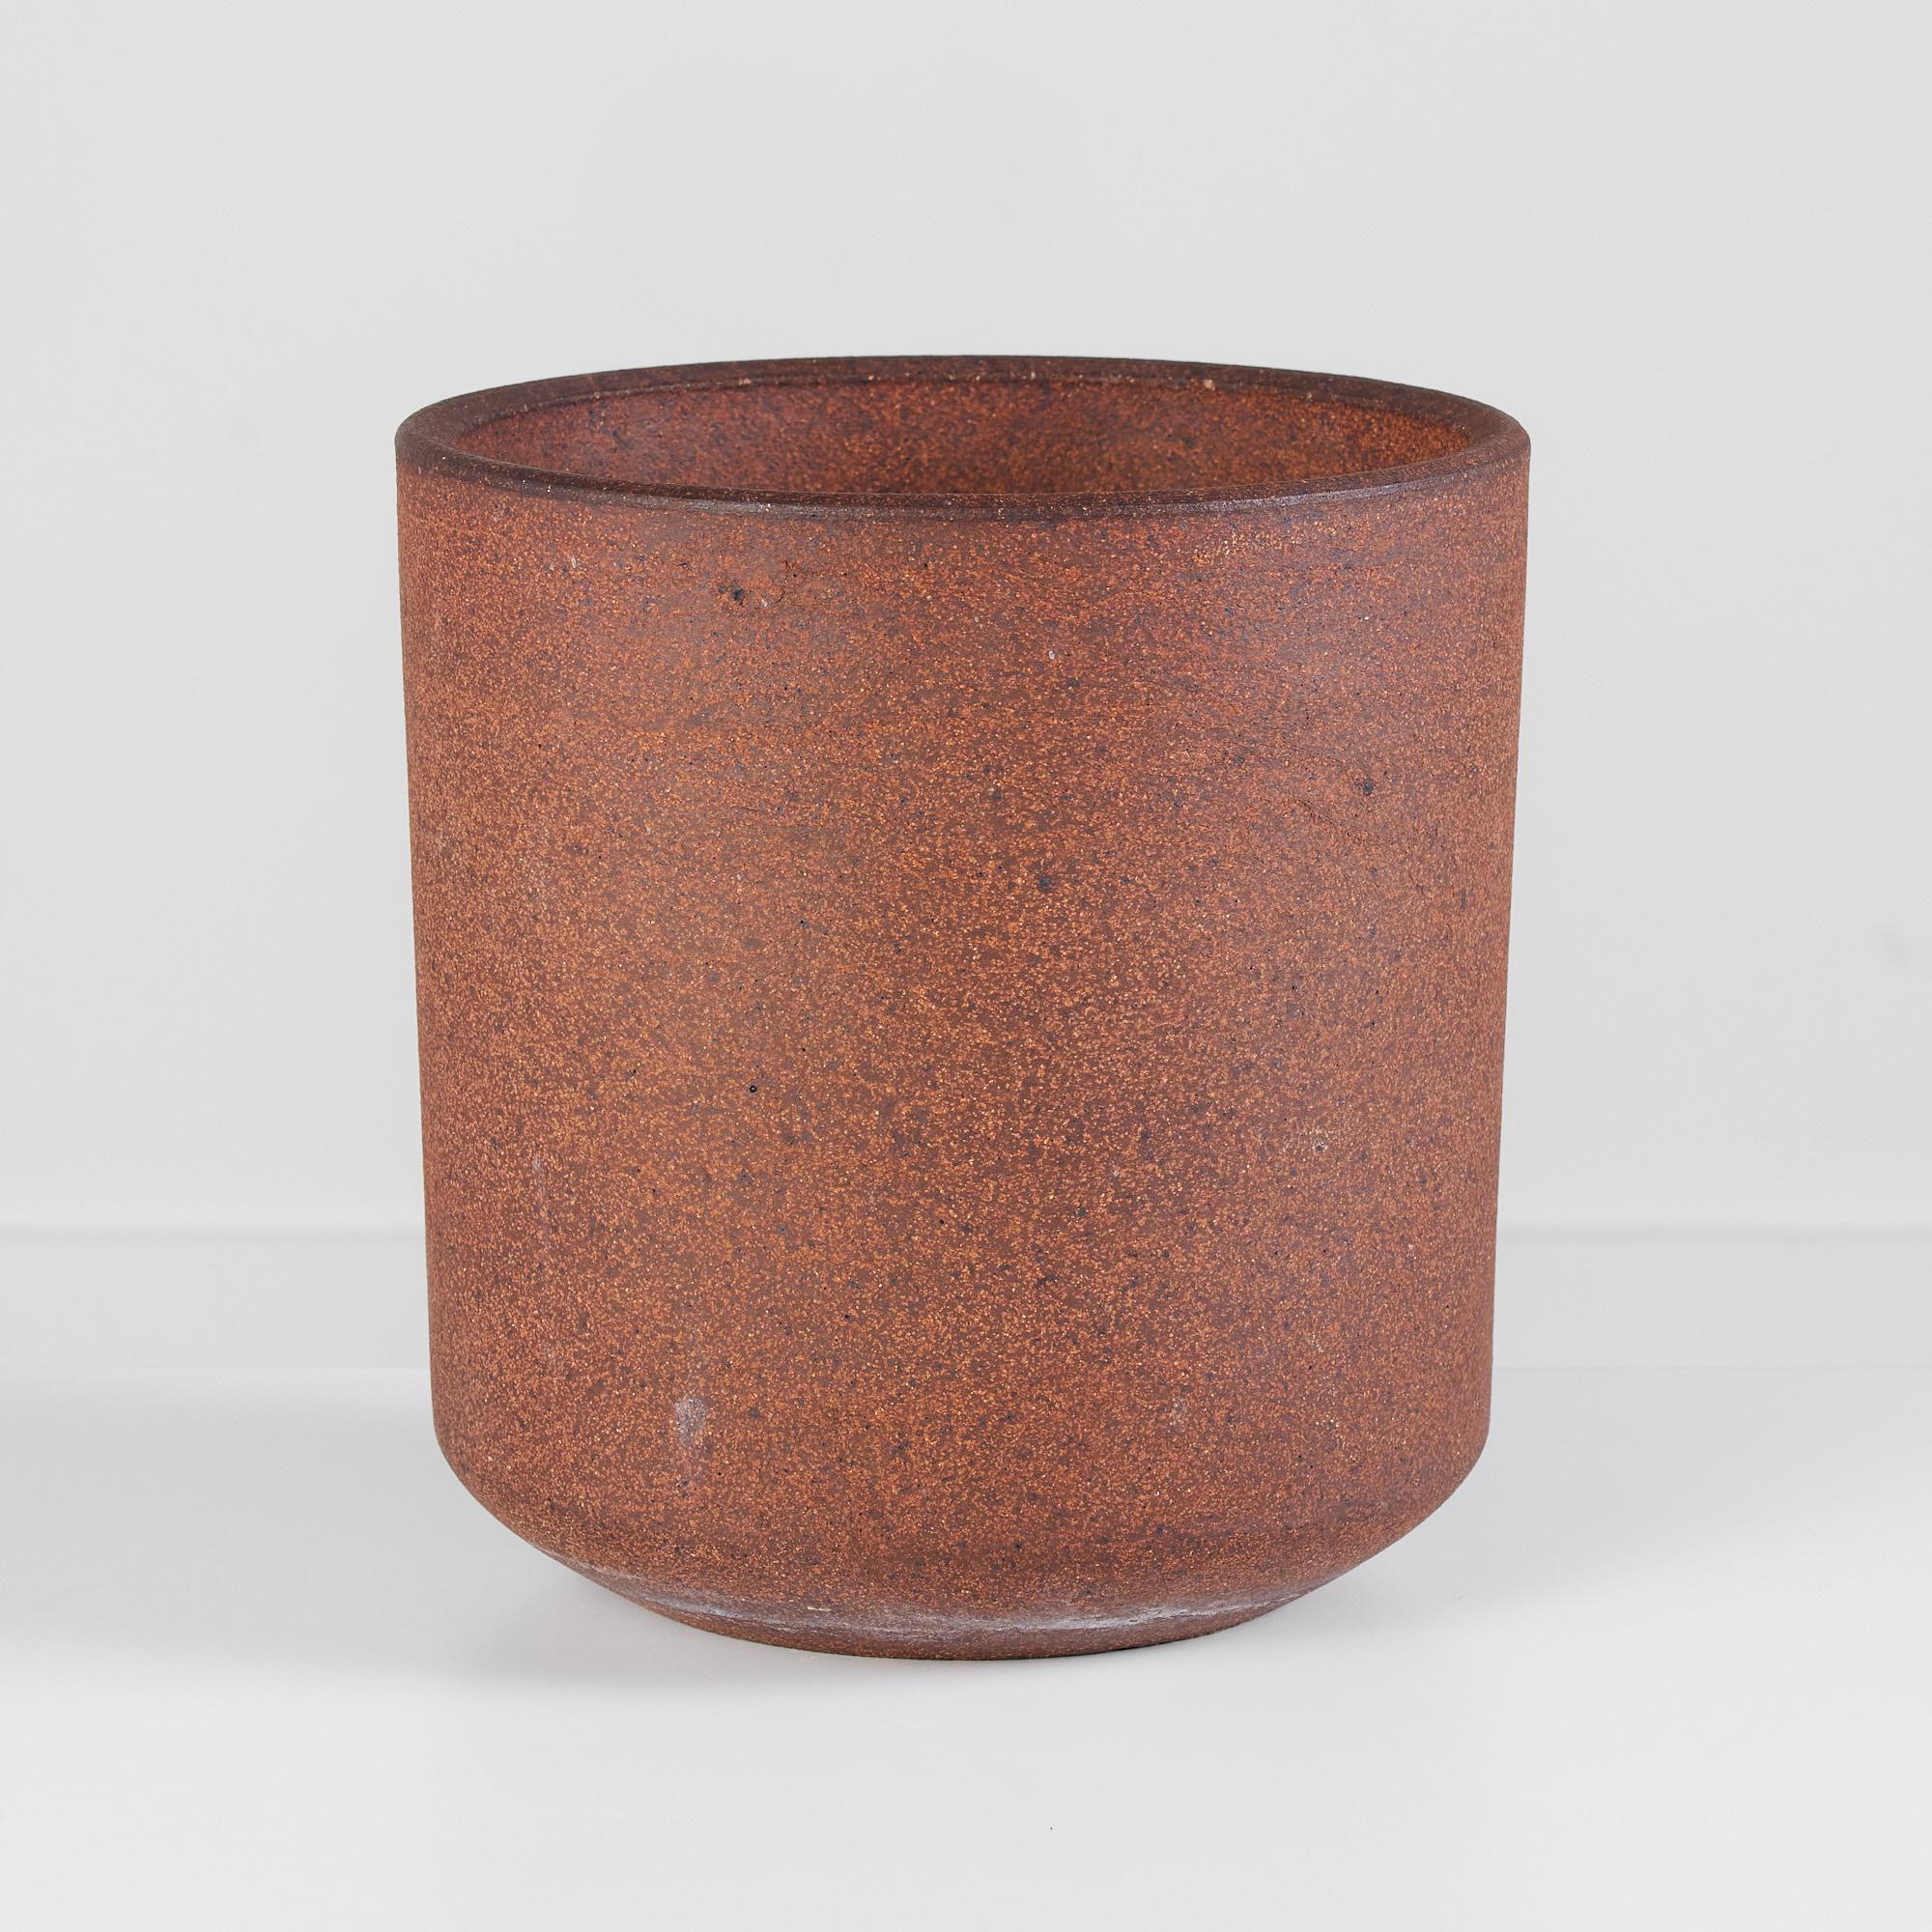 Lagardo Tackett Pflanzgefäß aus unglasiertem Steingut für Architectural Pottery. Dieses zylindrische Exemplar ist leicht strukturiert und innen und außen gesprenkelt.

Abmessungen: 10.25